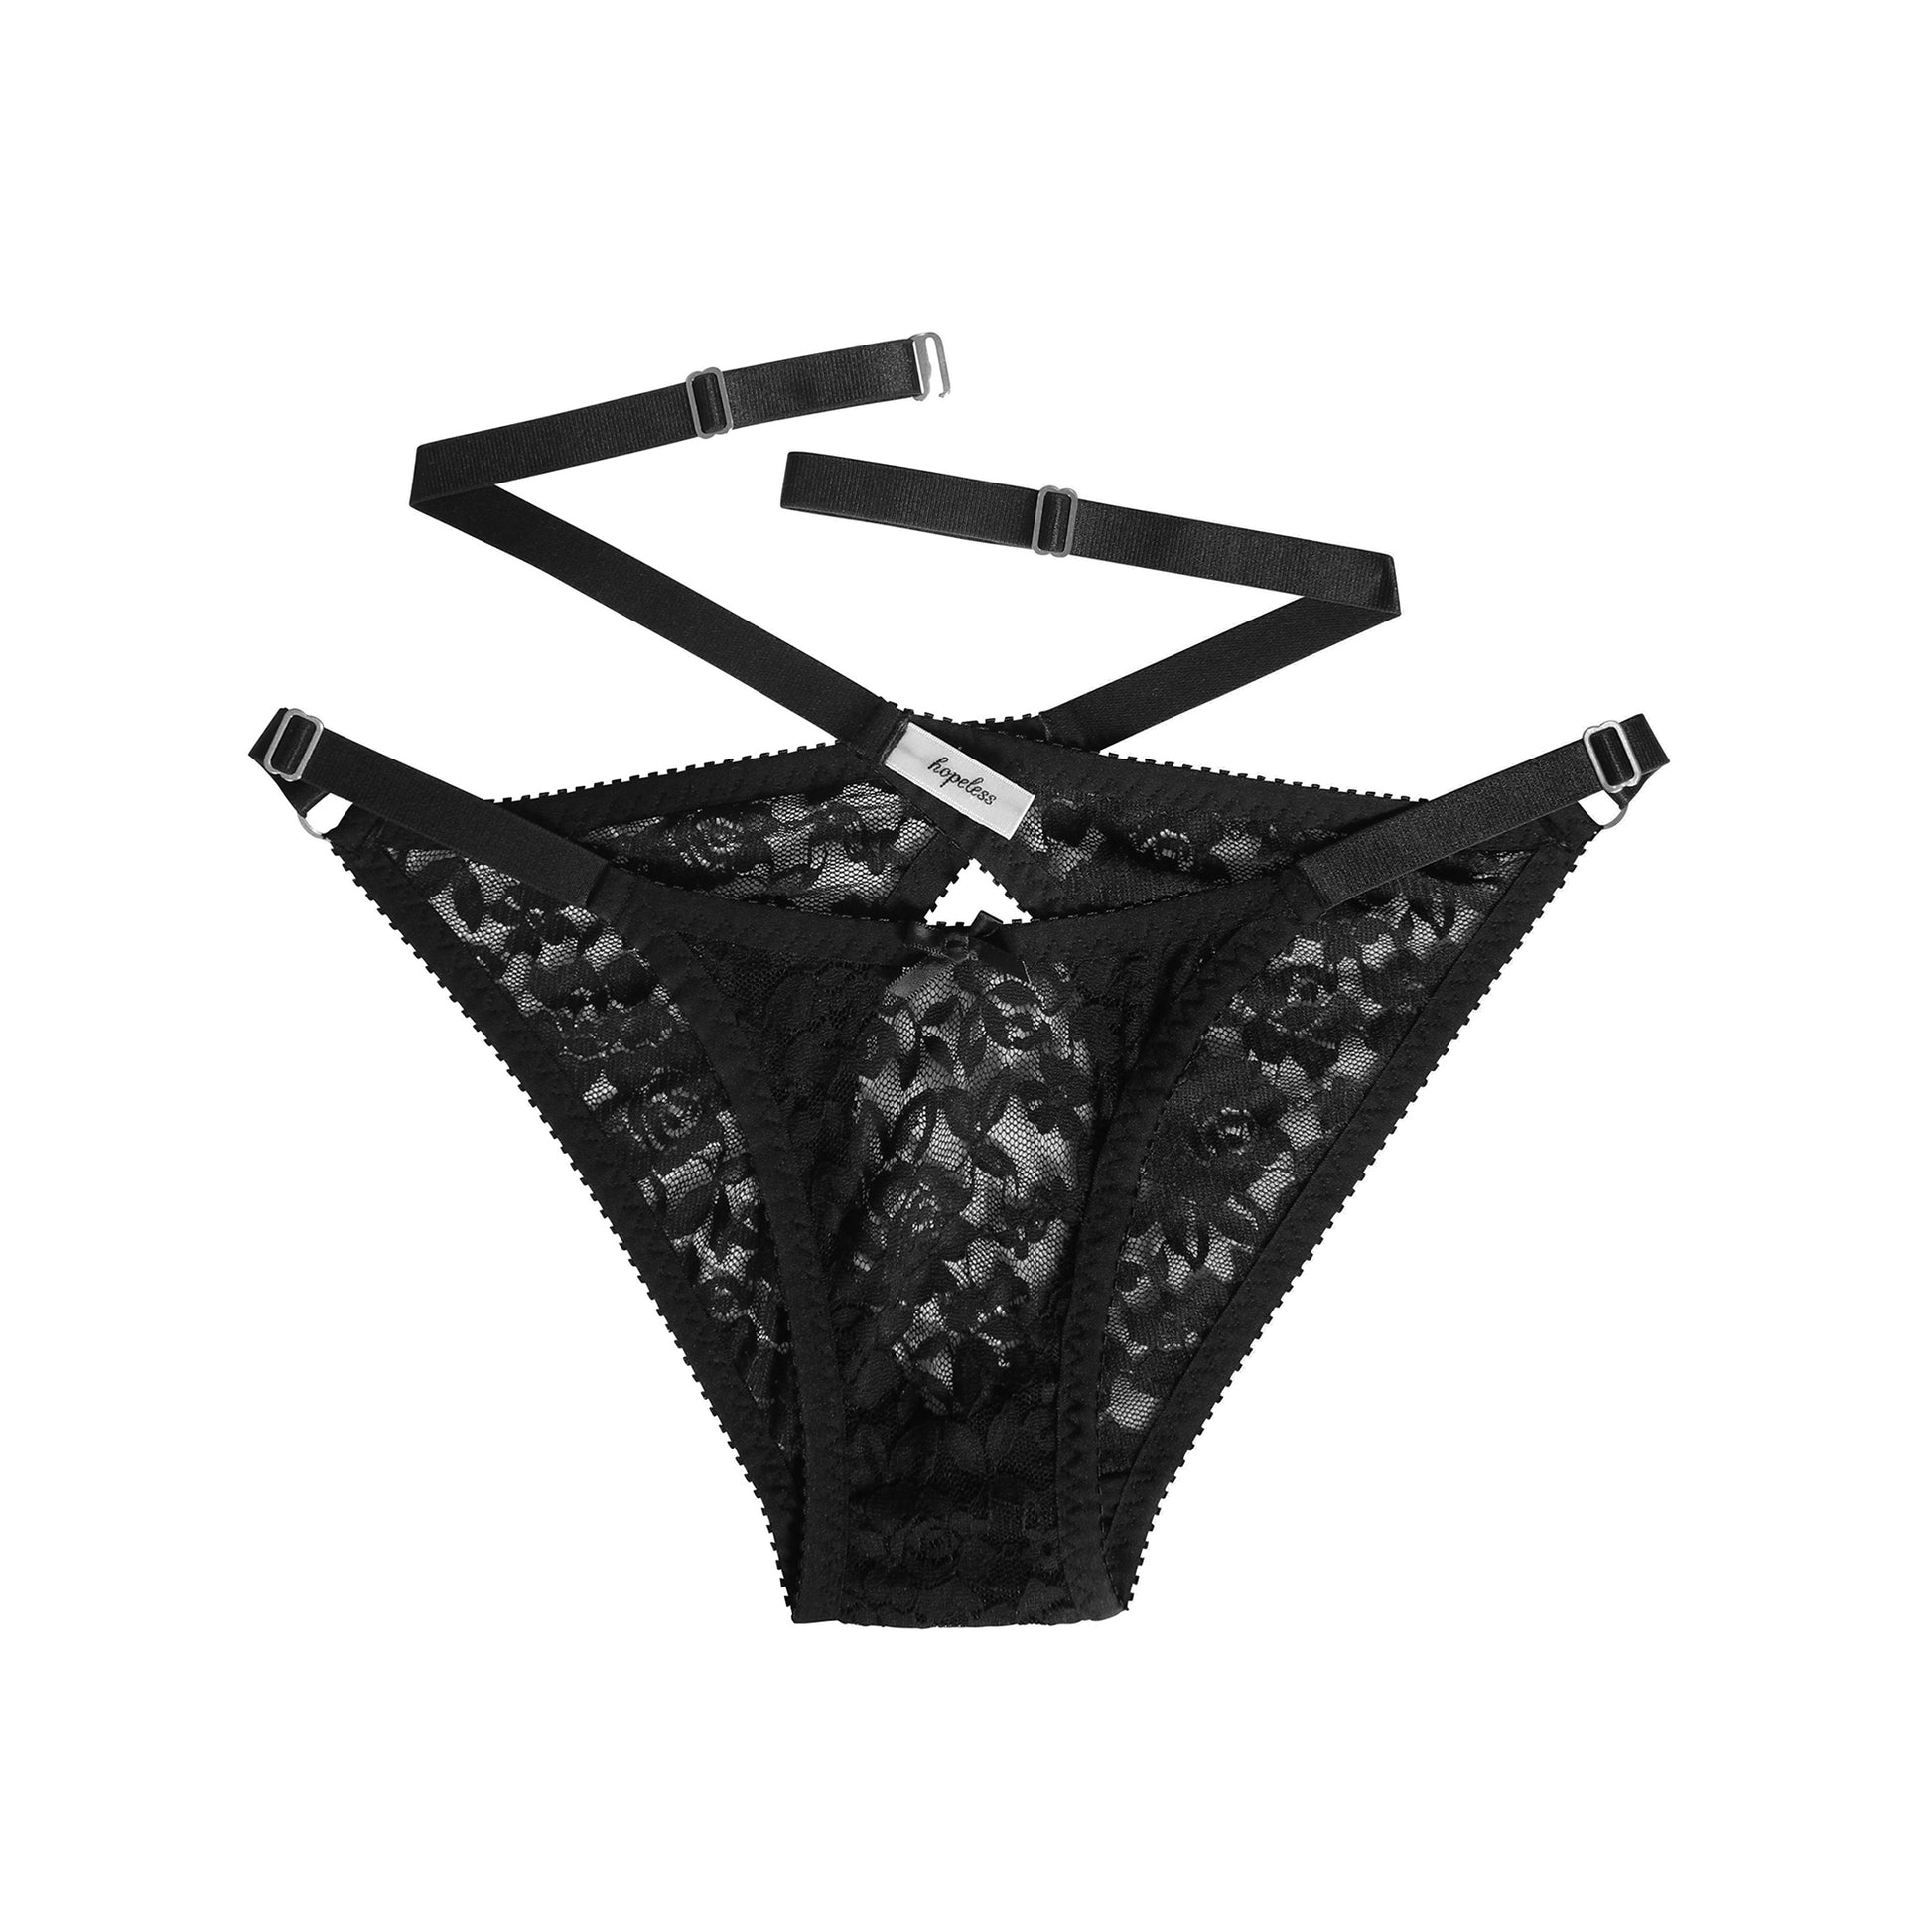 Black Lace Underwear | Lauren by Hopeless Lingerie